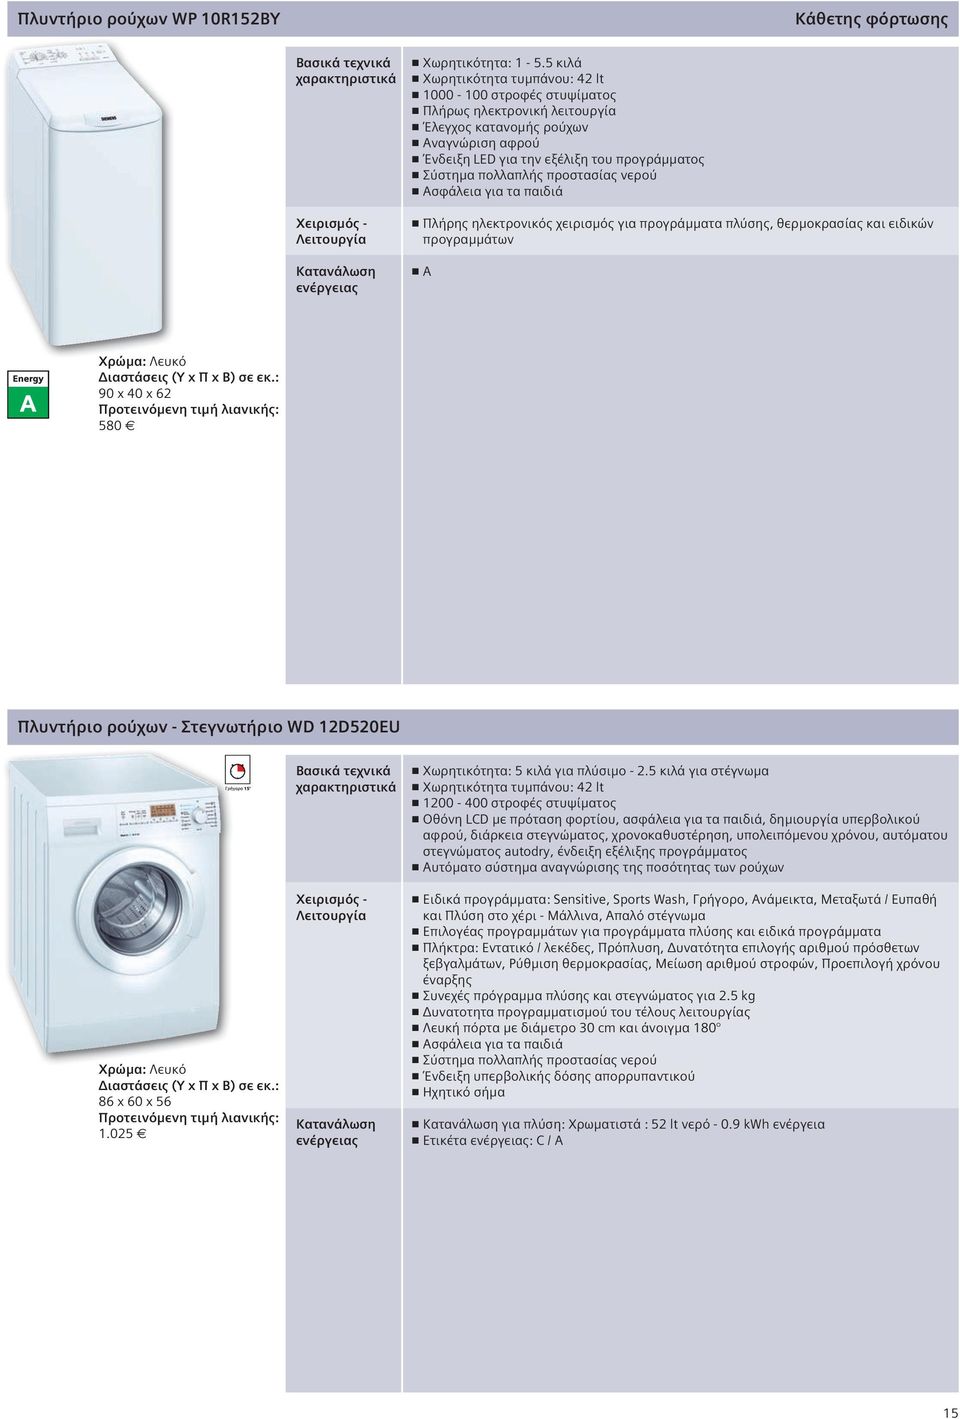 προστασίας νερού Ασφάλεια για τα παιδιά Πλήρης ηλεκτρονικός χειρισμός για προγράμματα πλύσης, θερμοκρασίας και ειδικών προγραμμάτων Α 90 x 40 x 62 580 Πλυντήριο ρούχων - Στεγνωτήριο WD 12D520EU 86 x